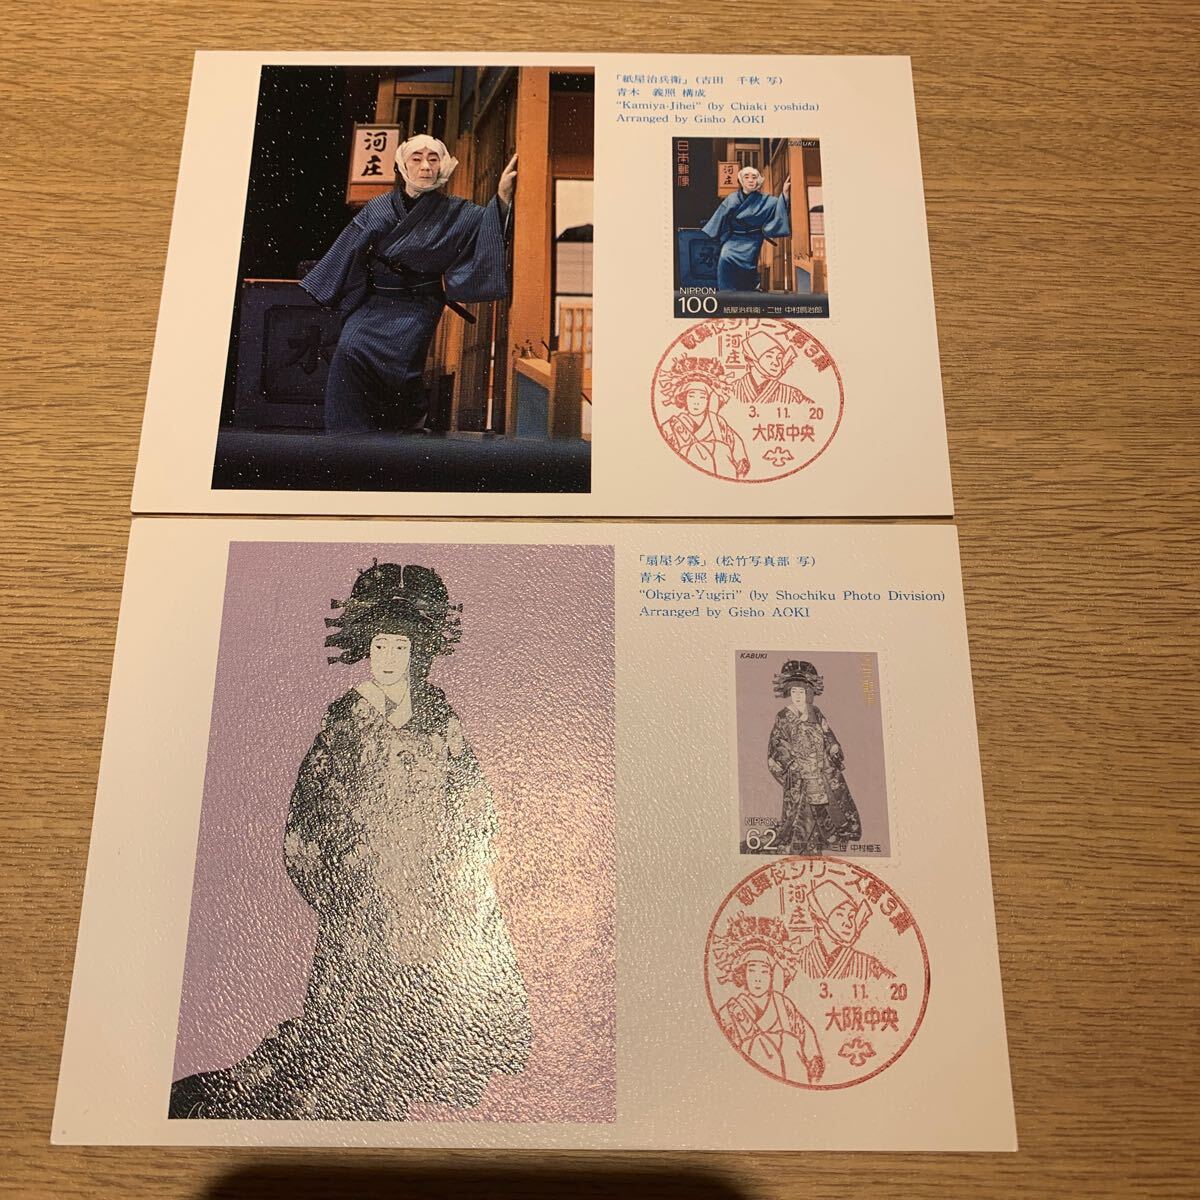  Maximum карта kabuki серии mail марка no. 3 сборник эпоха Heisei 3 год выпуск 2 листов суммировать 